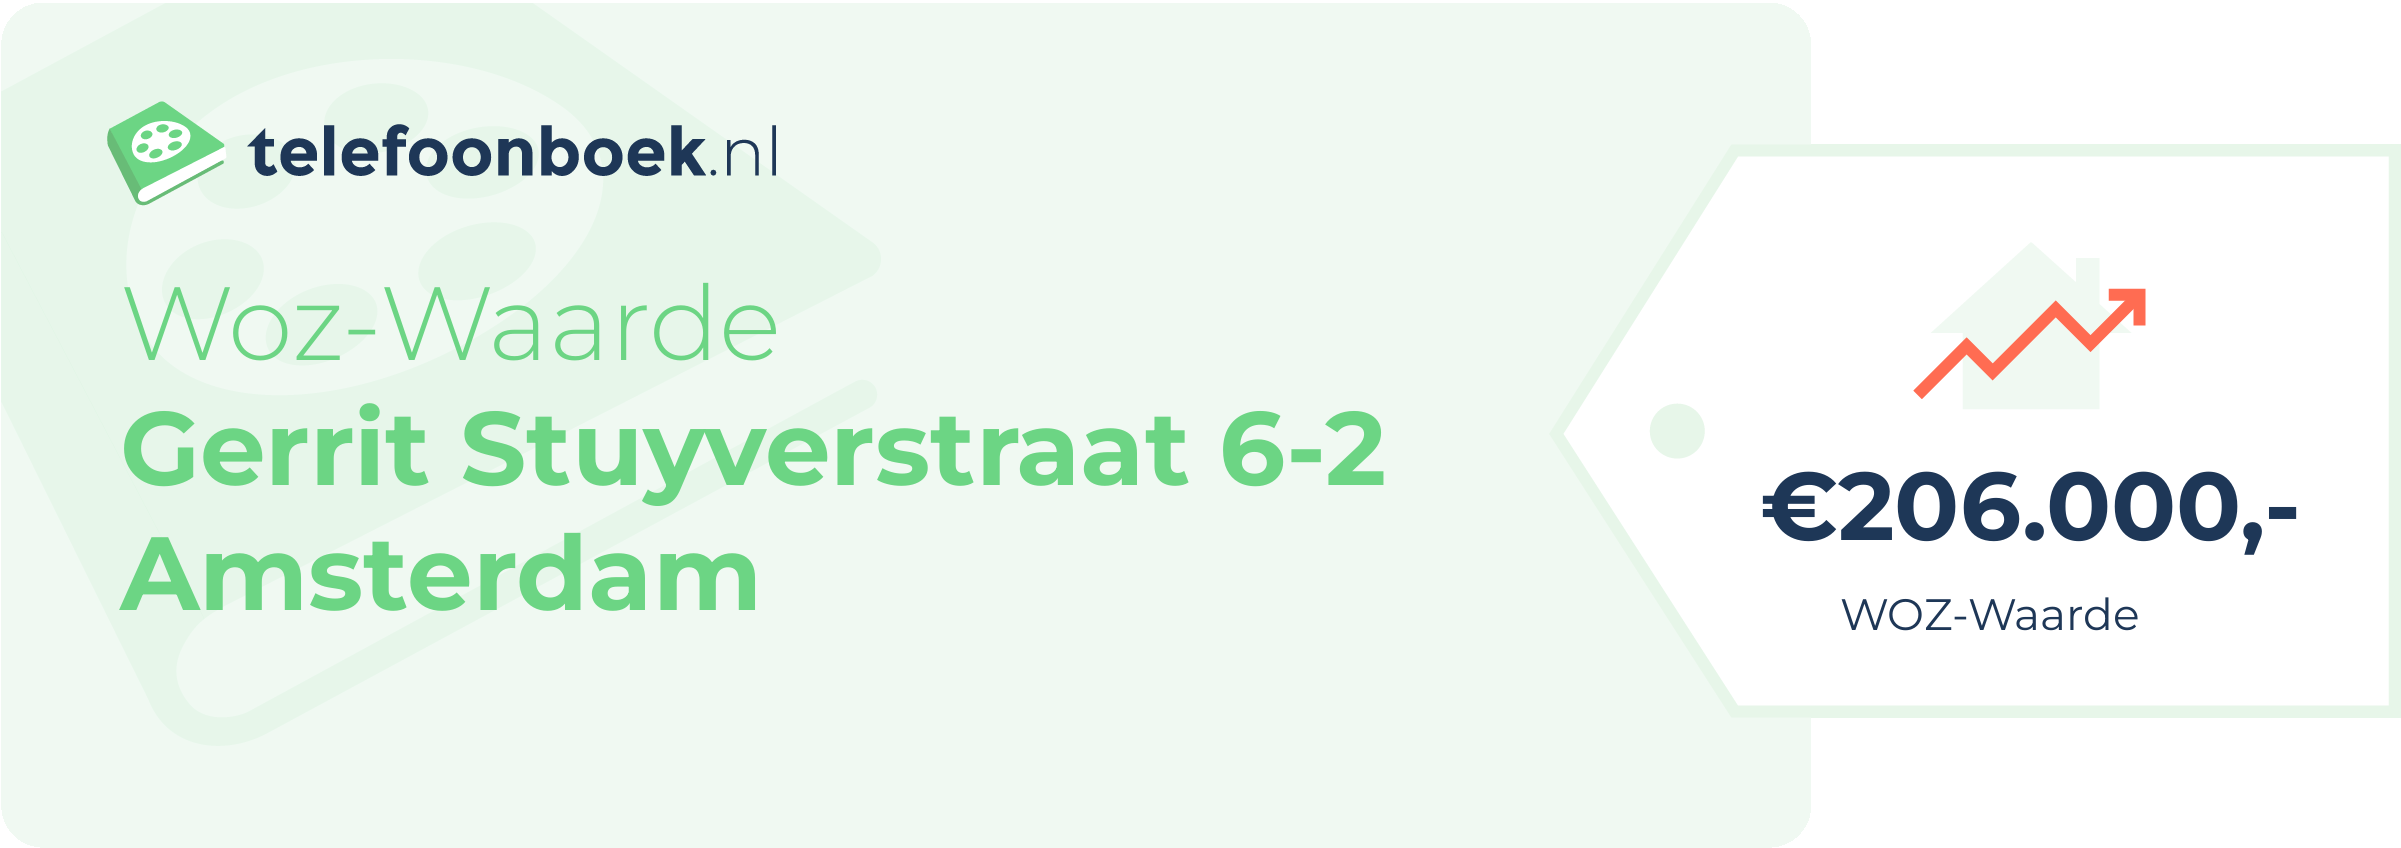 WOZ-waarde Gerrit Stuyverstraat 6-2 Amsterdam